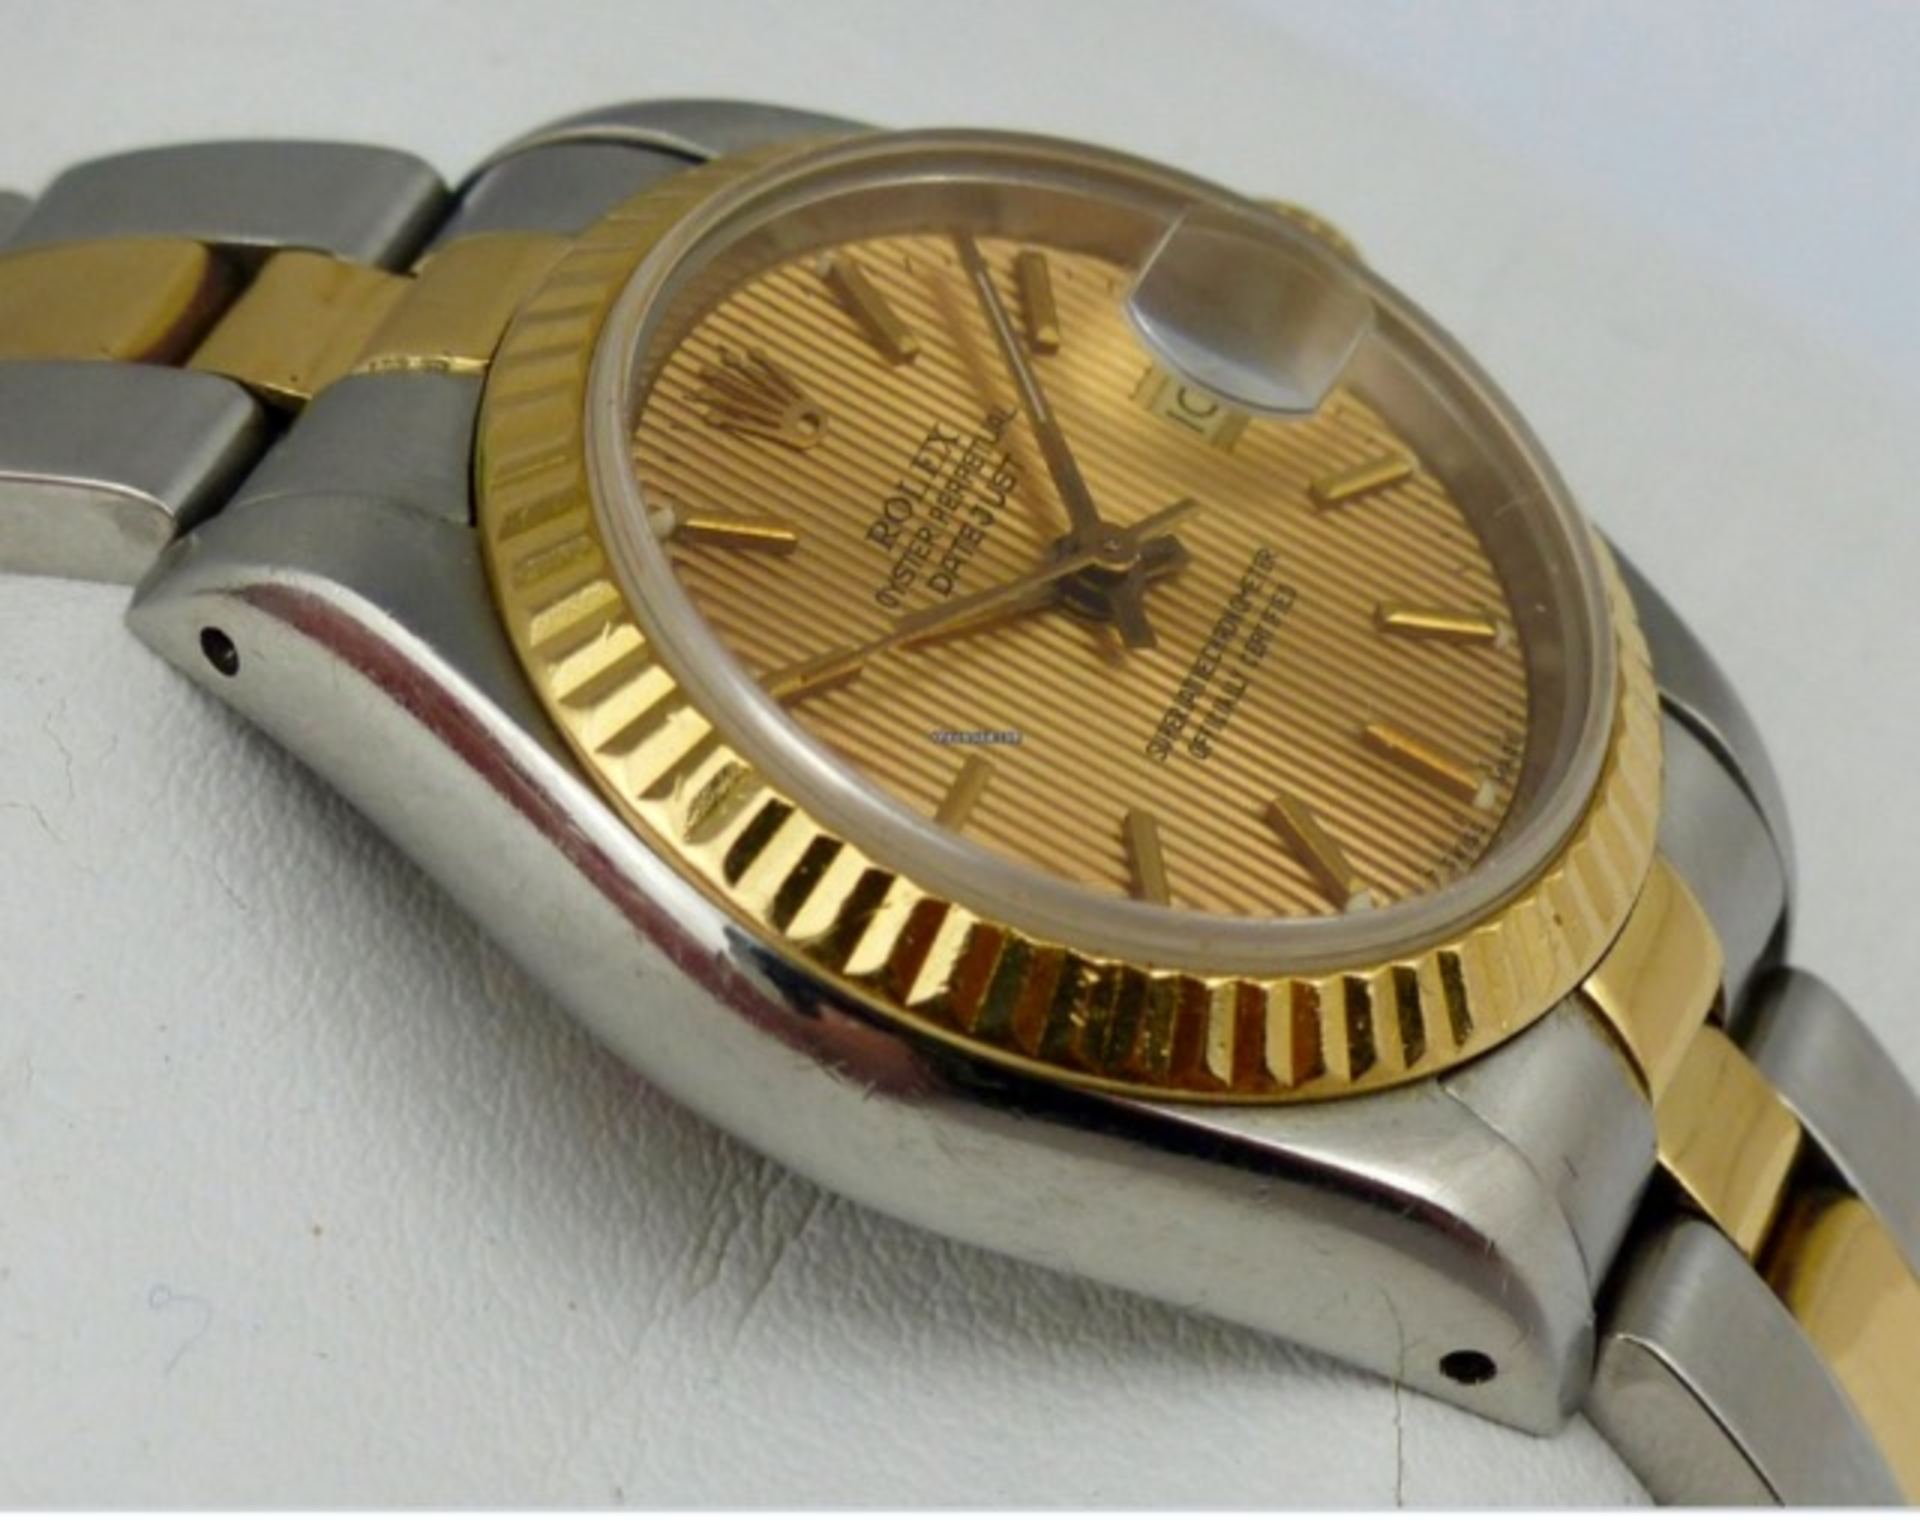 Rolex Ladies 1988 18k Corduroy original dial - Image 2 of 2